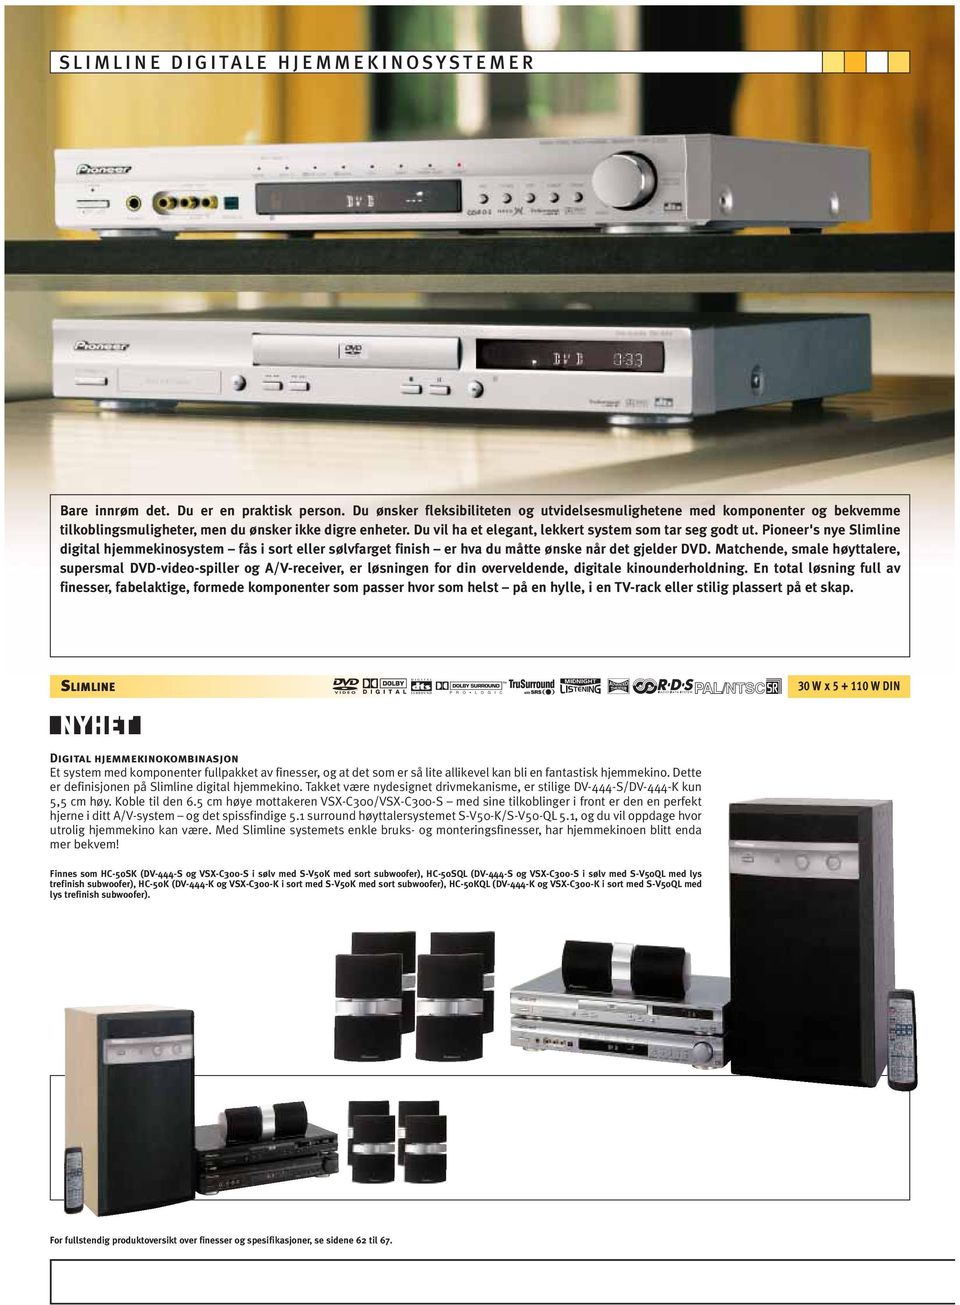 Pioneer's nye Slimline digital hjemmekinosystem fås i sort eller sølvfarget finish er hva du måtte ønske når det gjelder DVD.